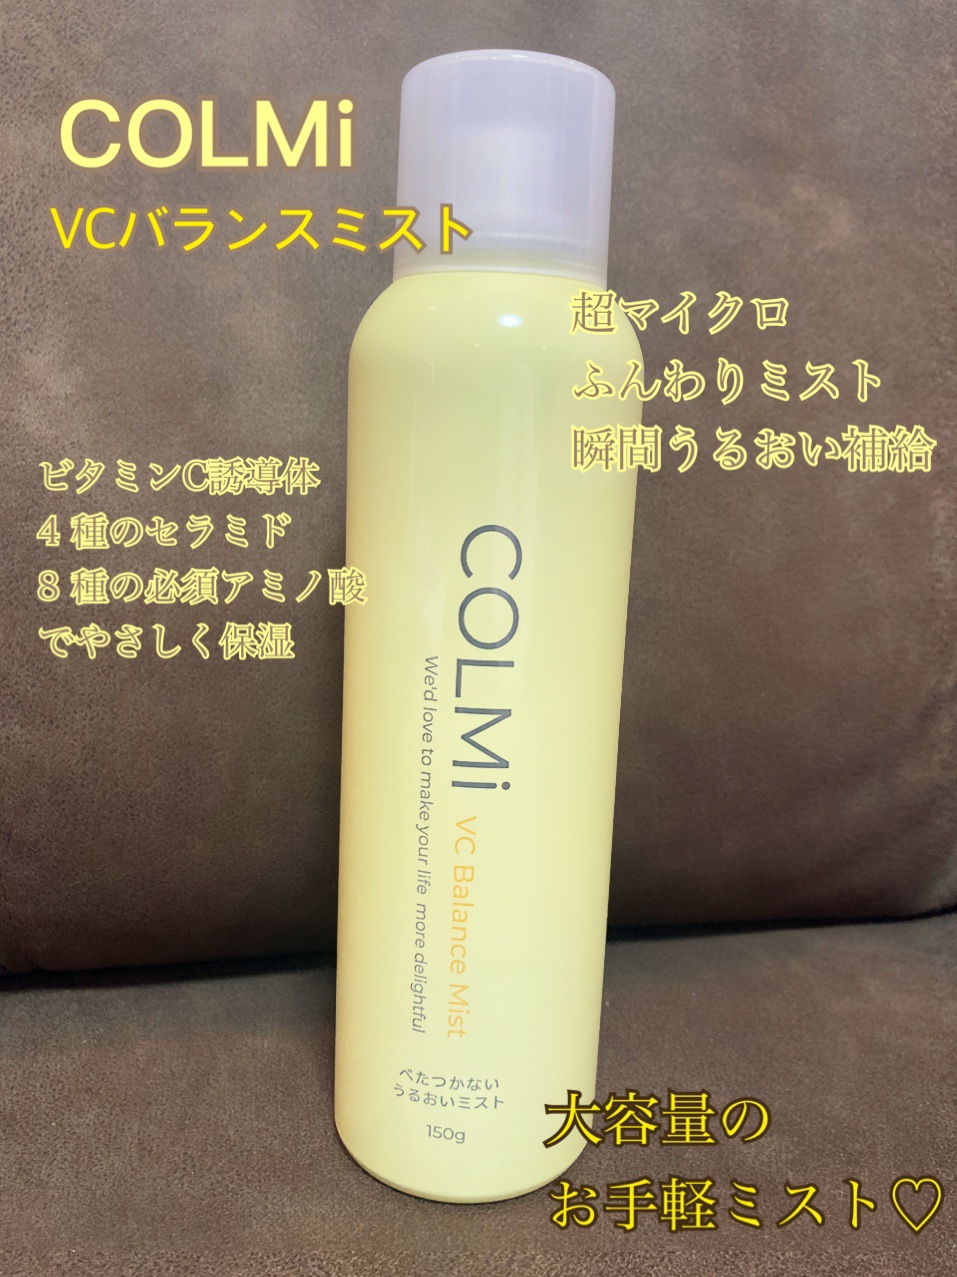 出色 COLMi コルミーVCバランスミスト 150g ミスト化粧水 ビタミンC 導入化粧水